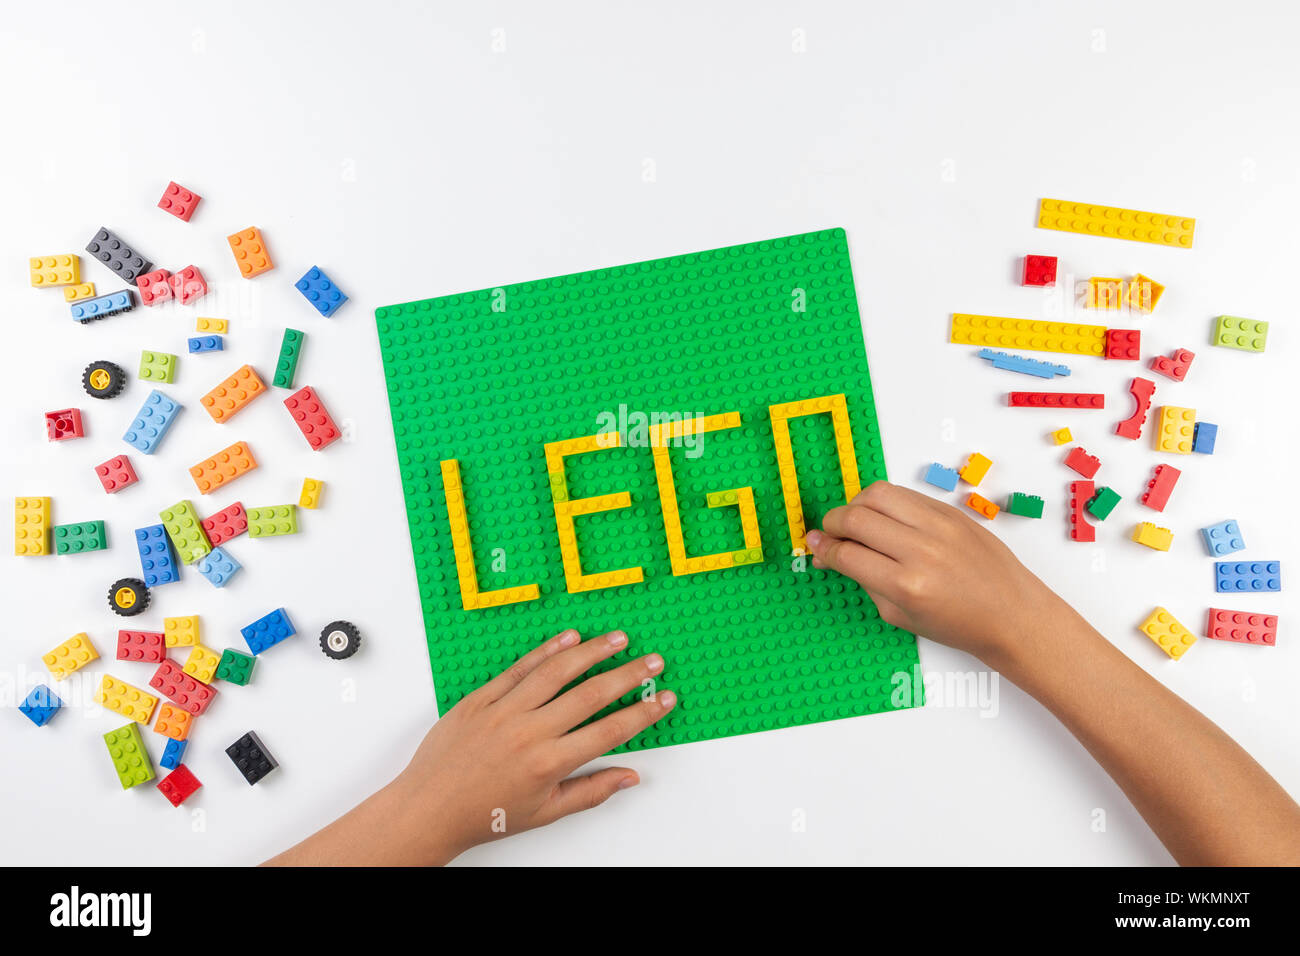 Lego word immagini e fotografie stock ad alta risoluzione - Alamy